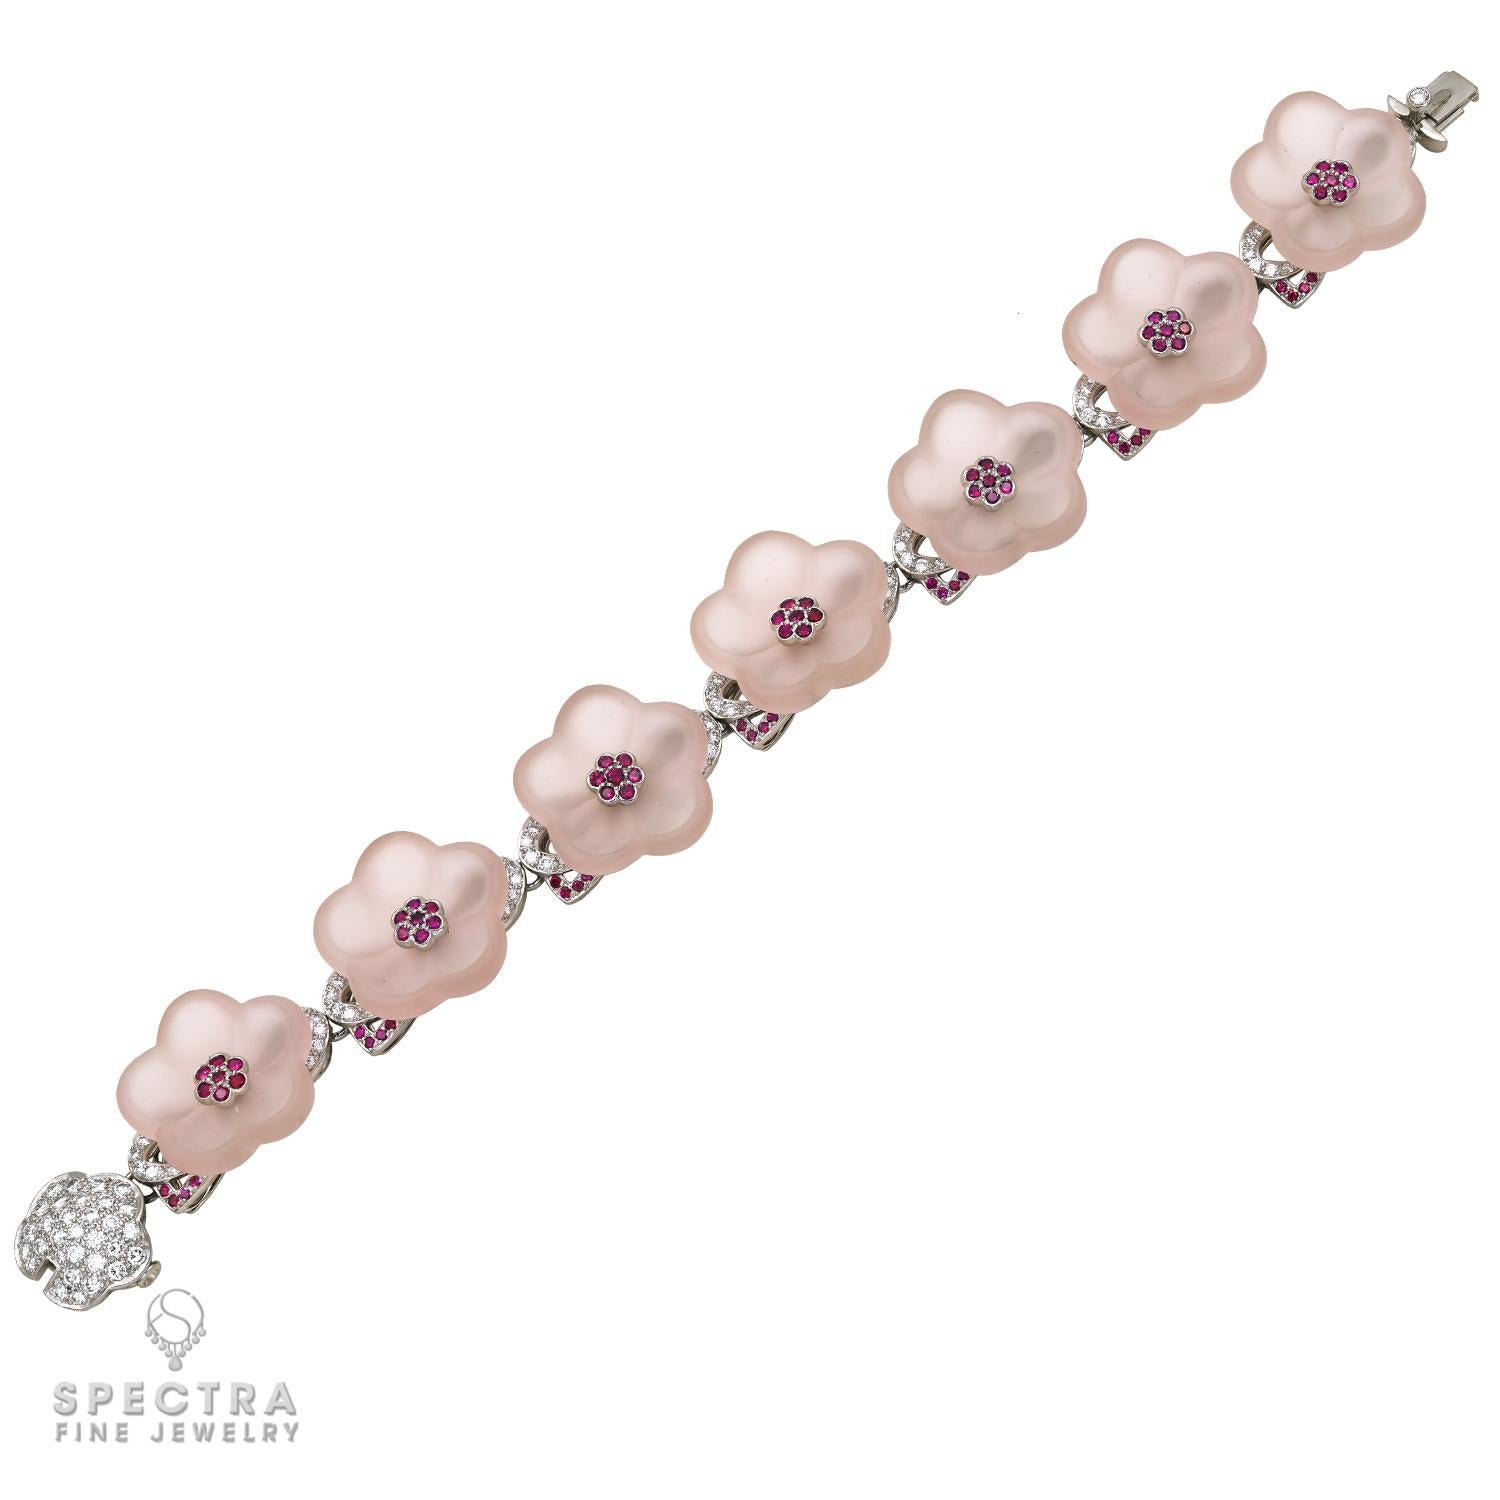 Cette paire de Tiffany & Co. Les bracelets de fleurs en cristal de roche et en quartz, fabriqués au XXIe siècle, vers 2000, présentent deux variétés de quartz - le quartz rose et la calcédoine - sculptées avec une élégante perfection. La paire de